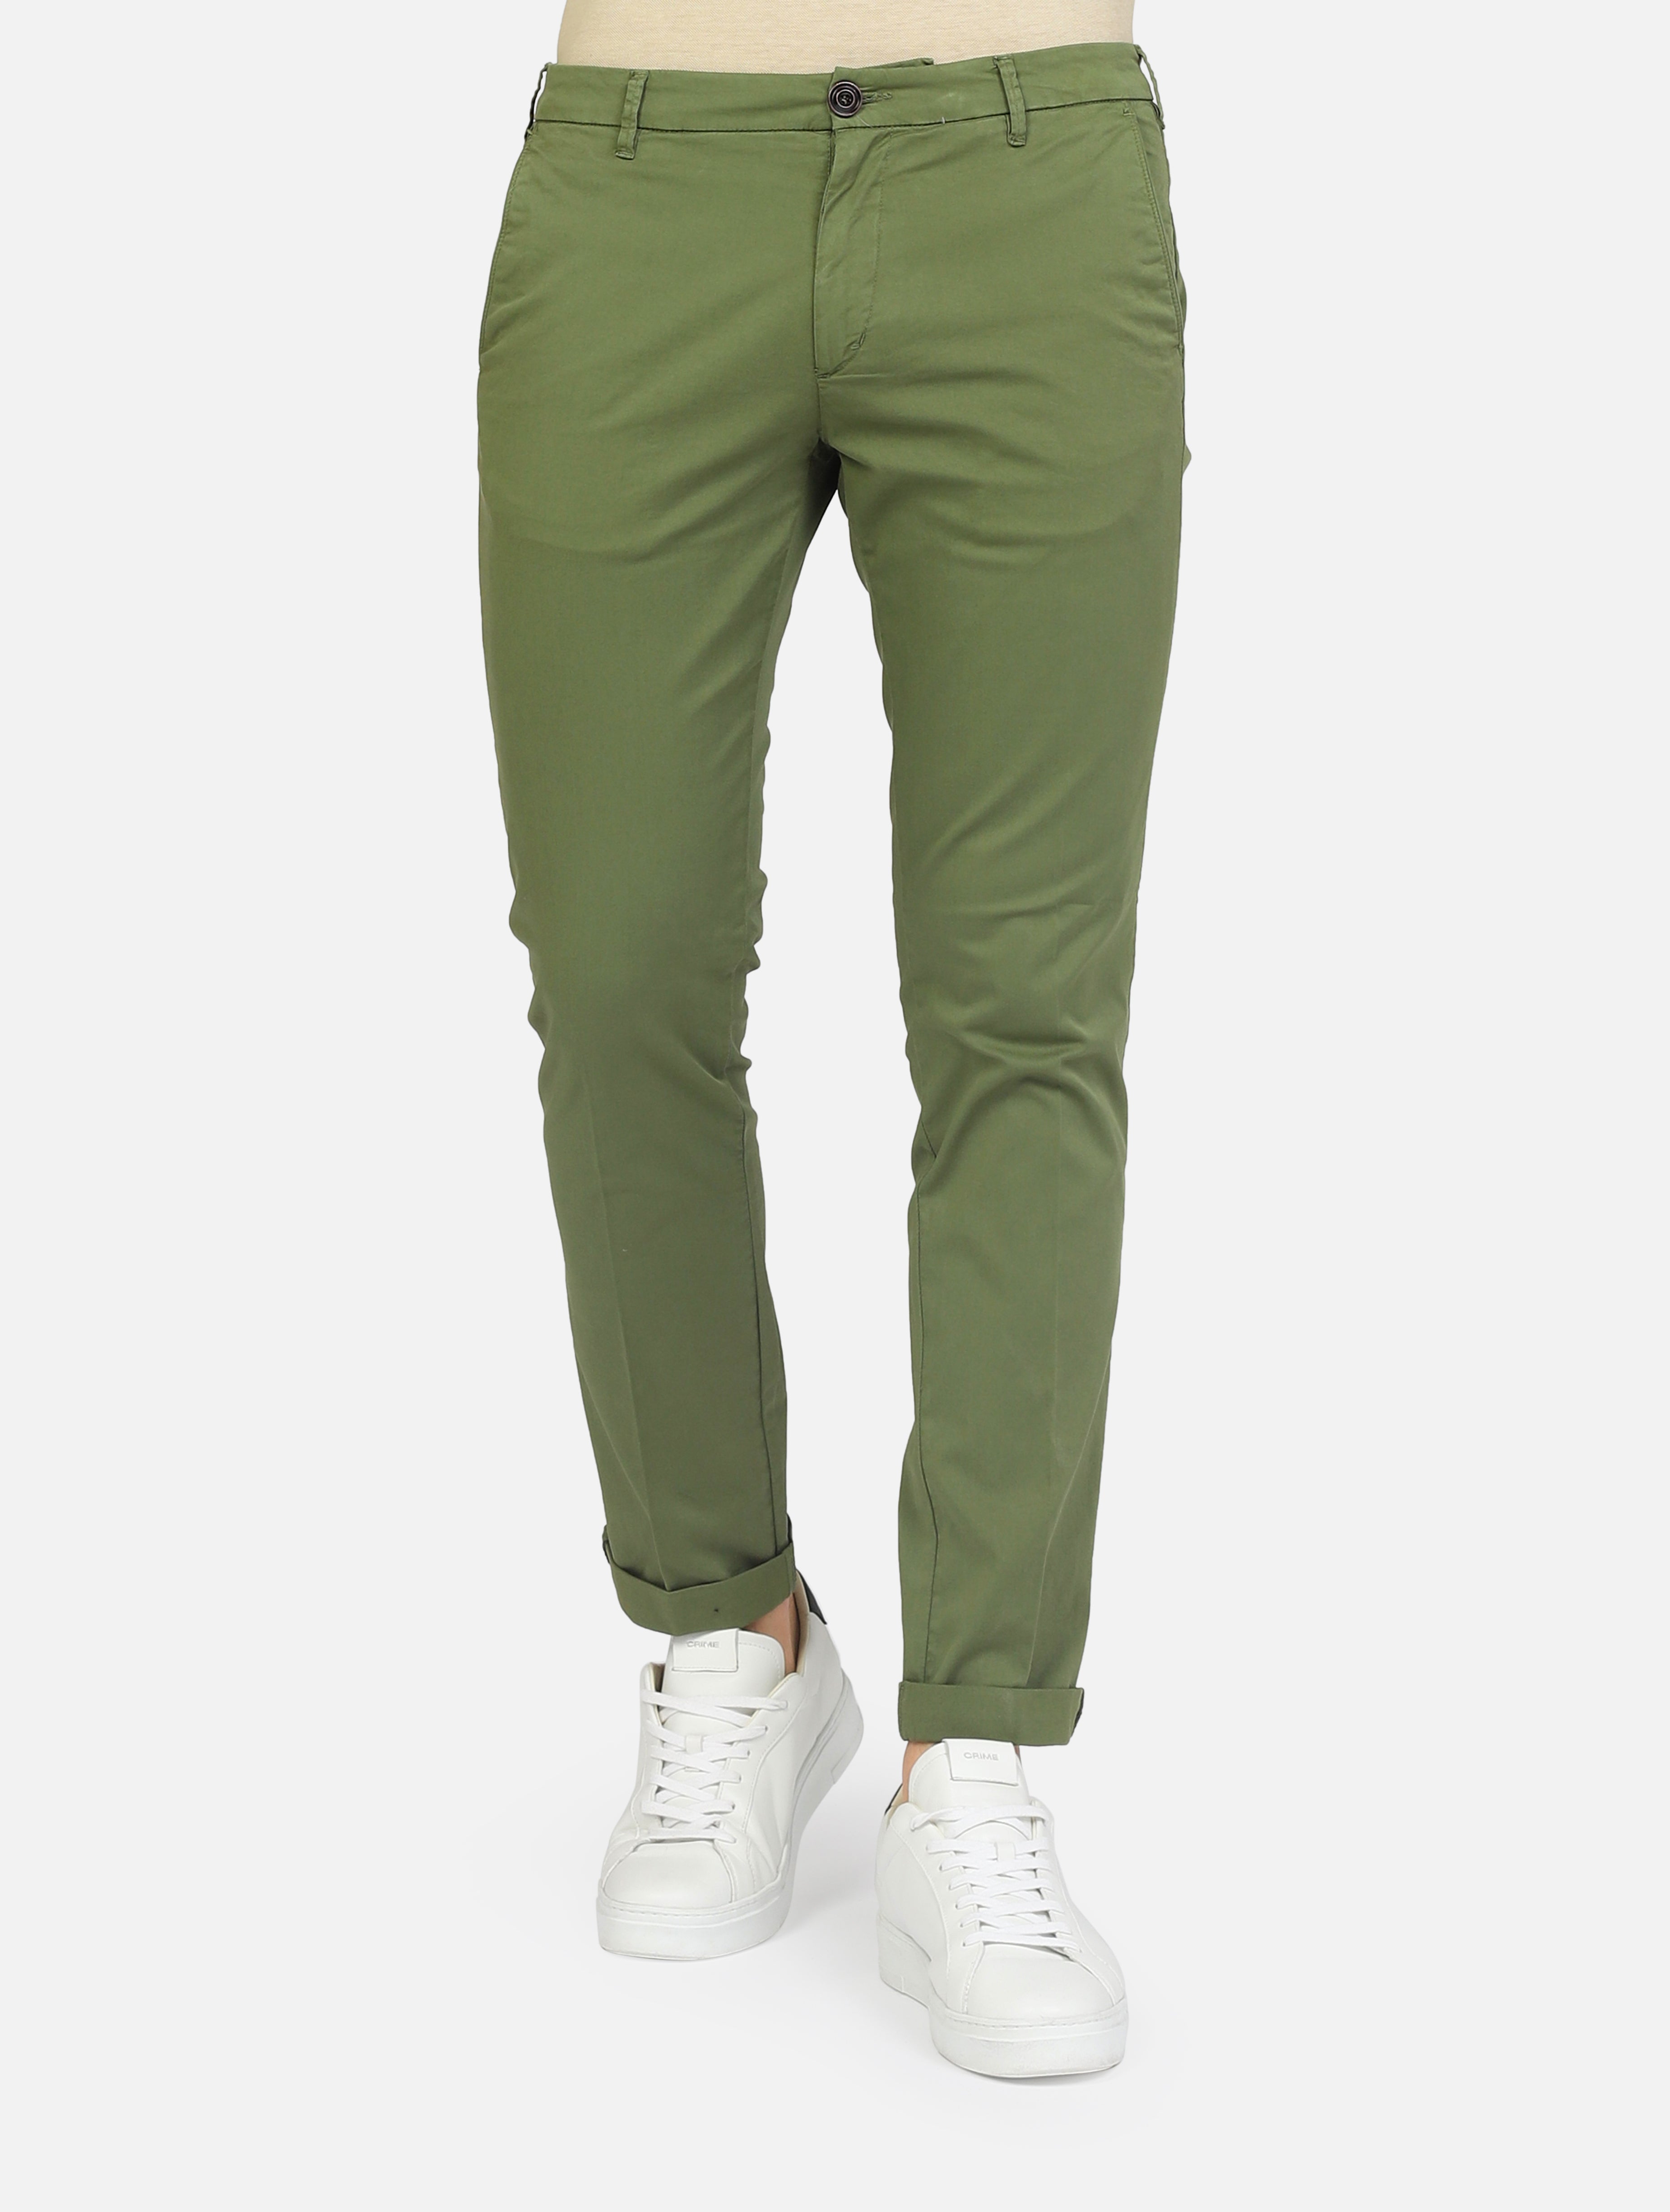 pantalone CLARK MARK-T095 PANT036 CHINOARMY GREEN